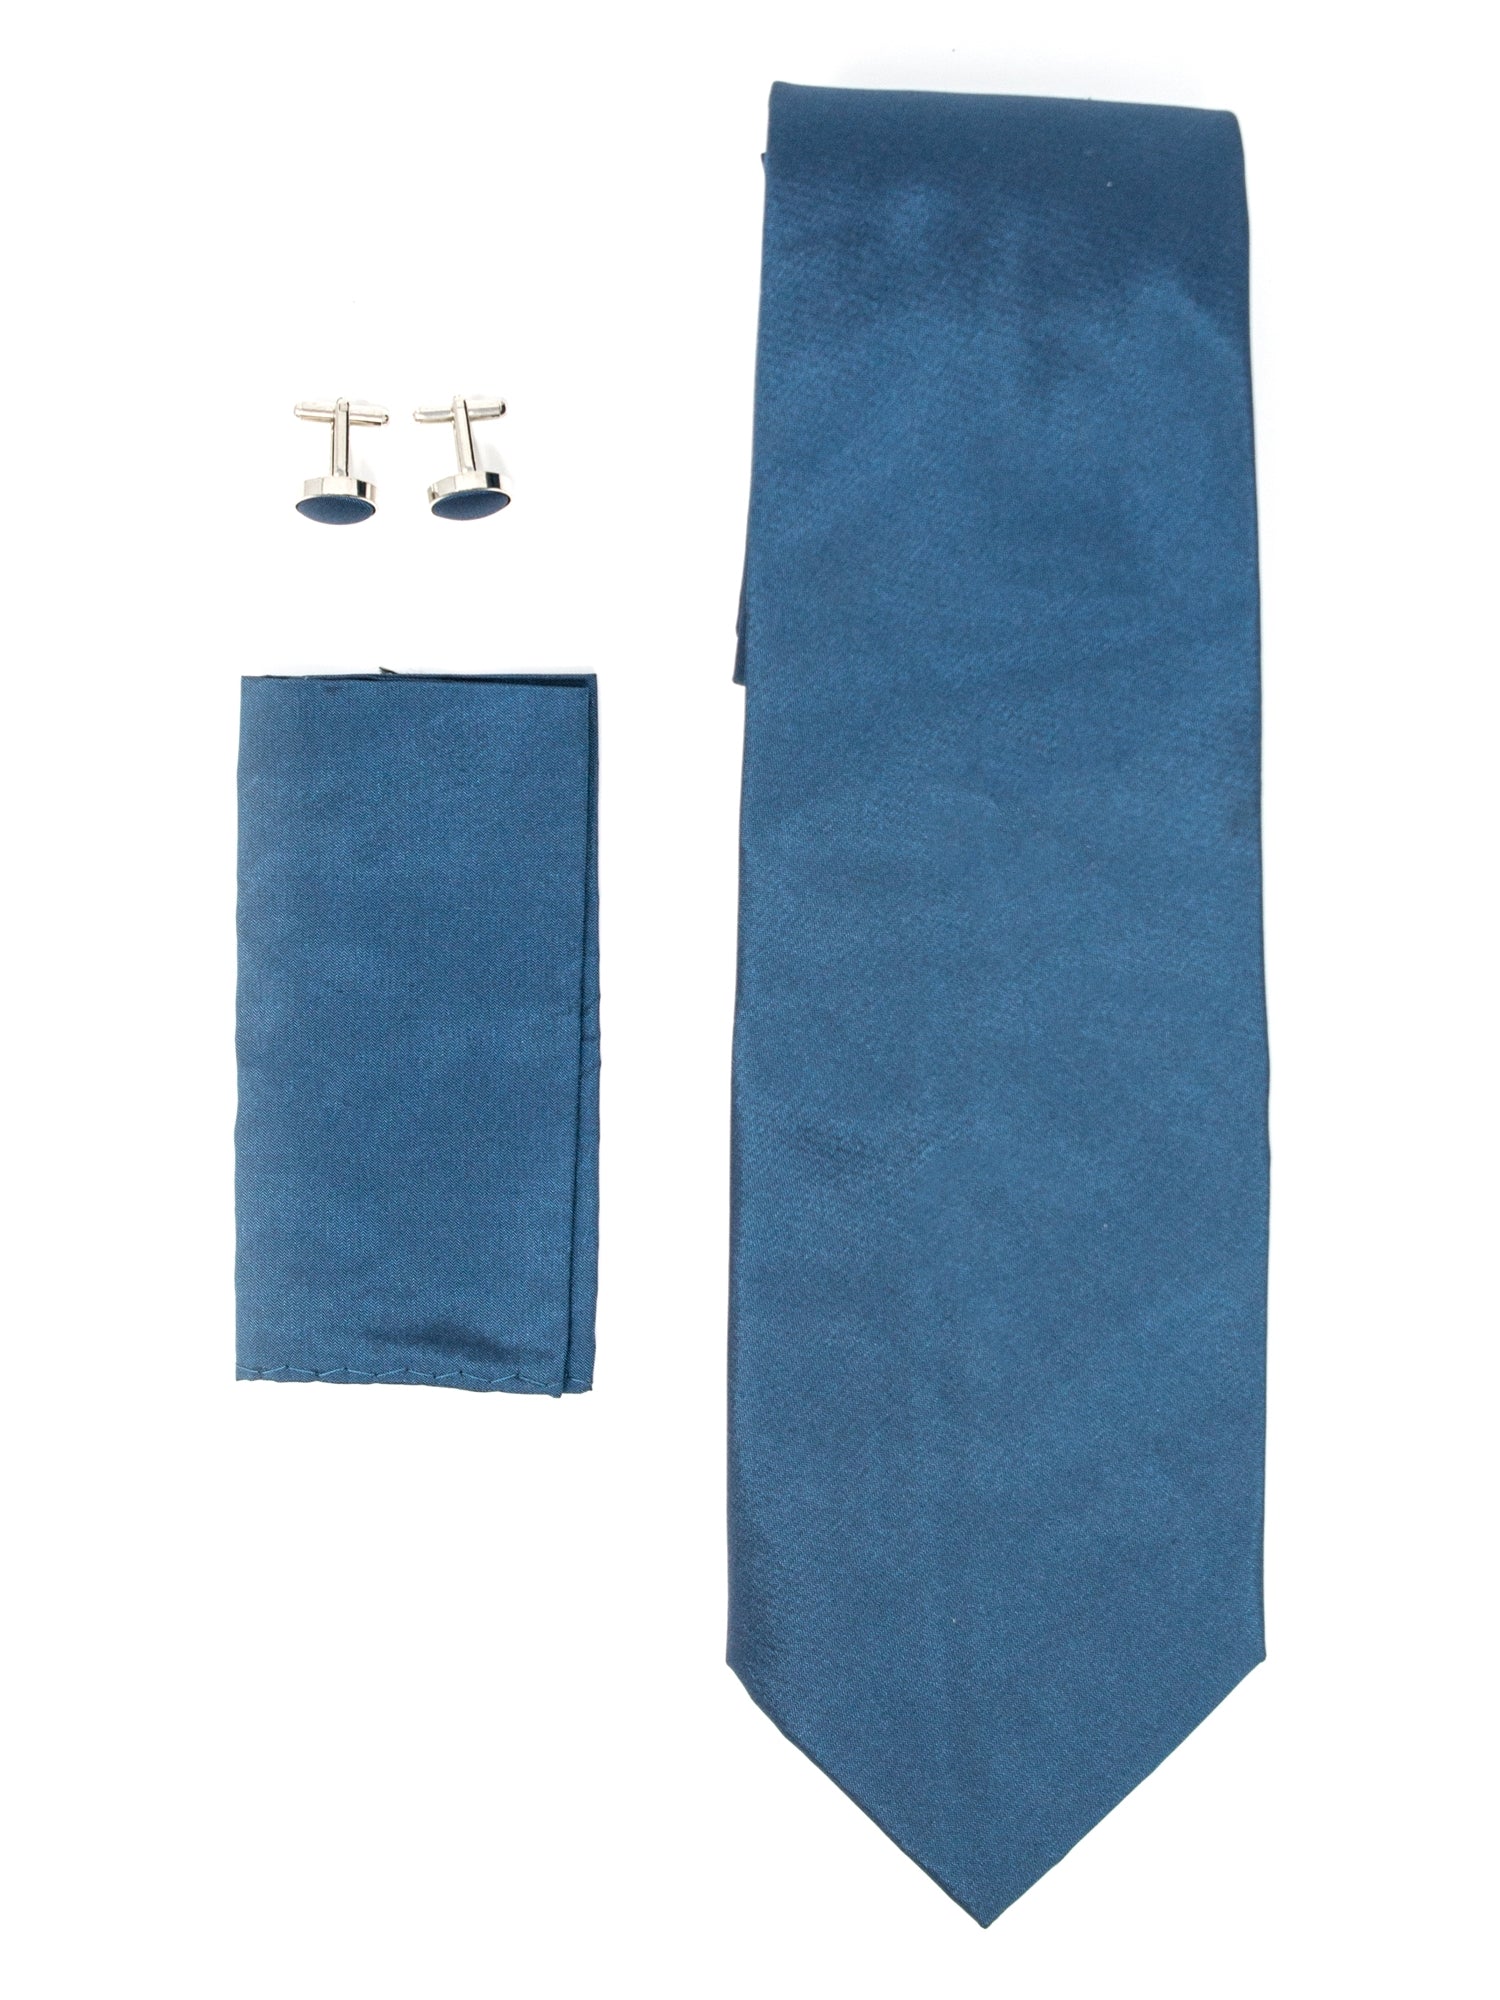 Men's Silk Neck Tie Set Cufflinks & Hanky Collection Neck Tie TheDapperTie Blue Solid Regular 